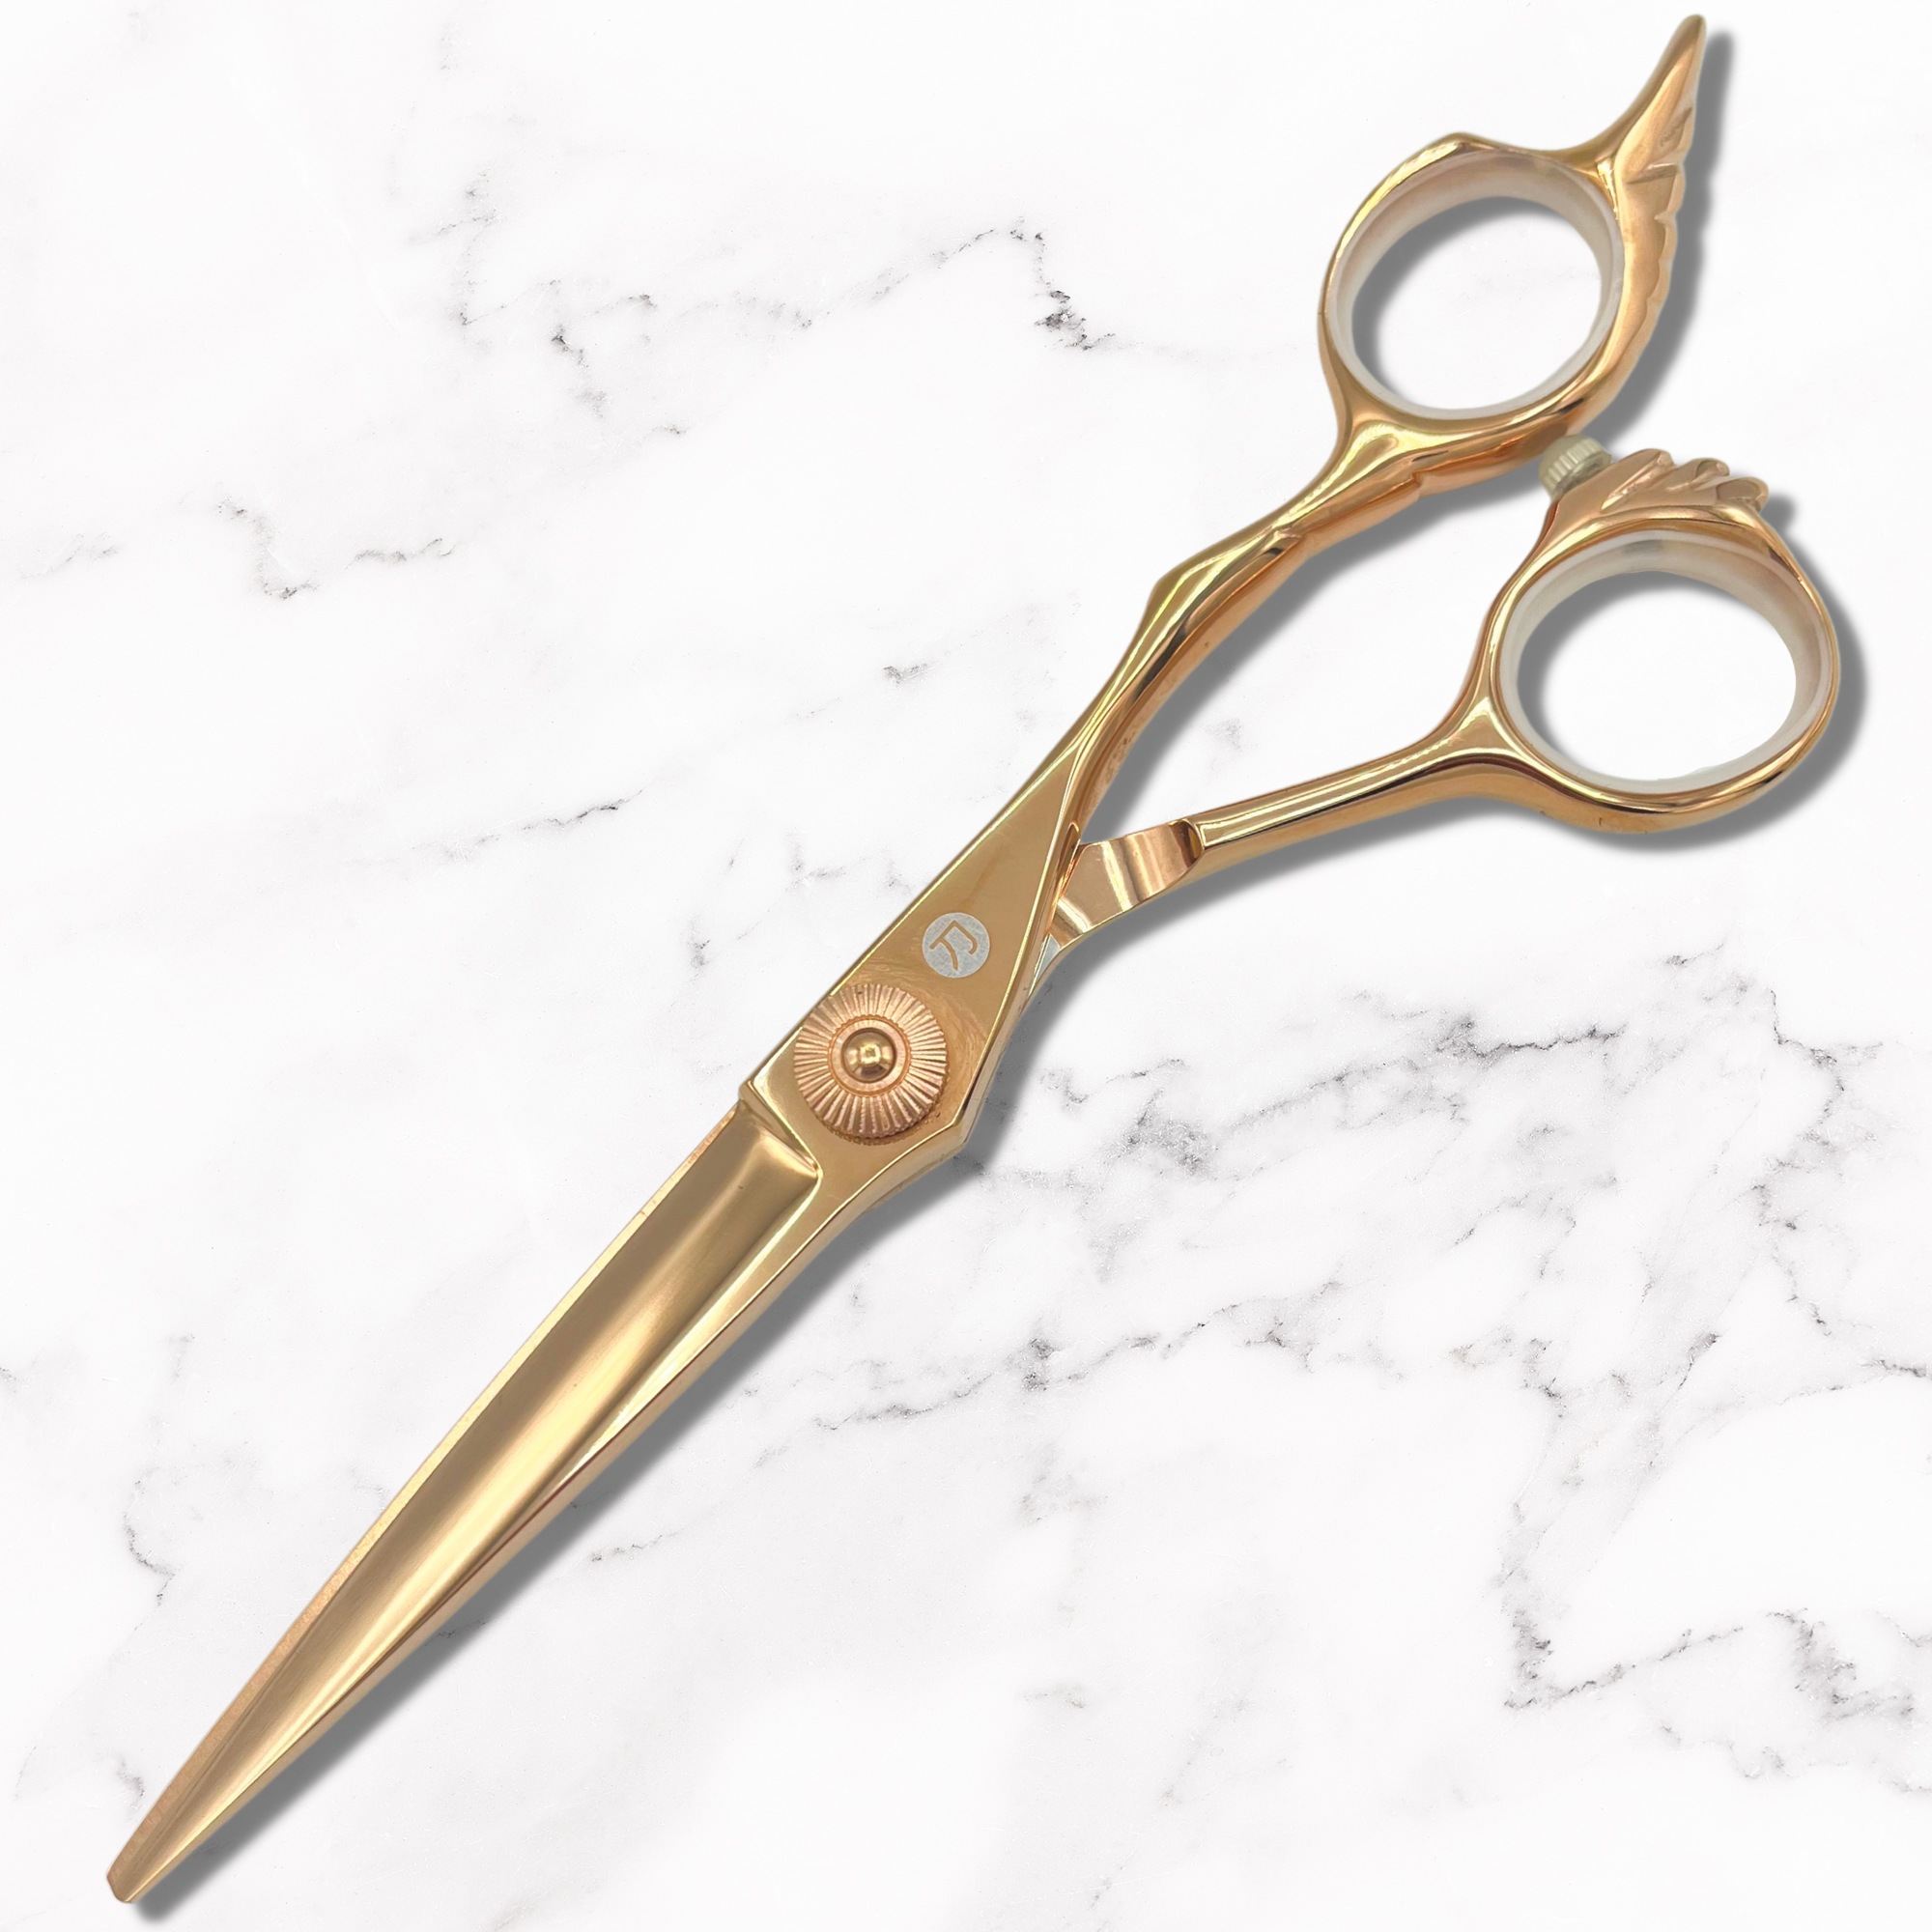 Cesoie/forbici per capelli Tsuru (oro o acciaio)